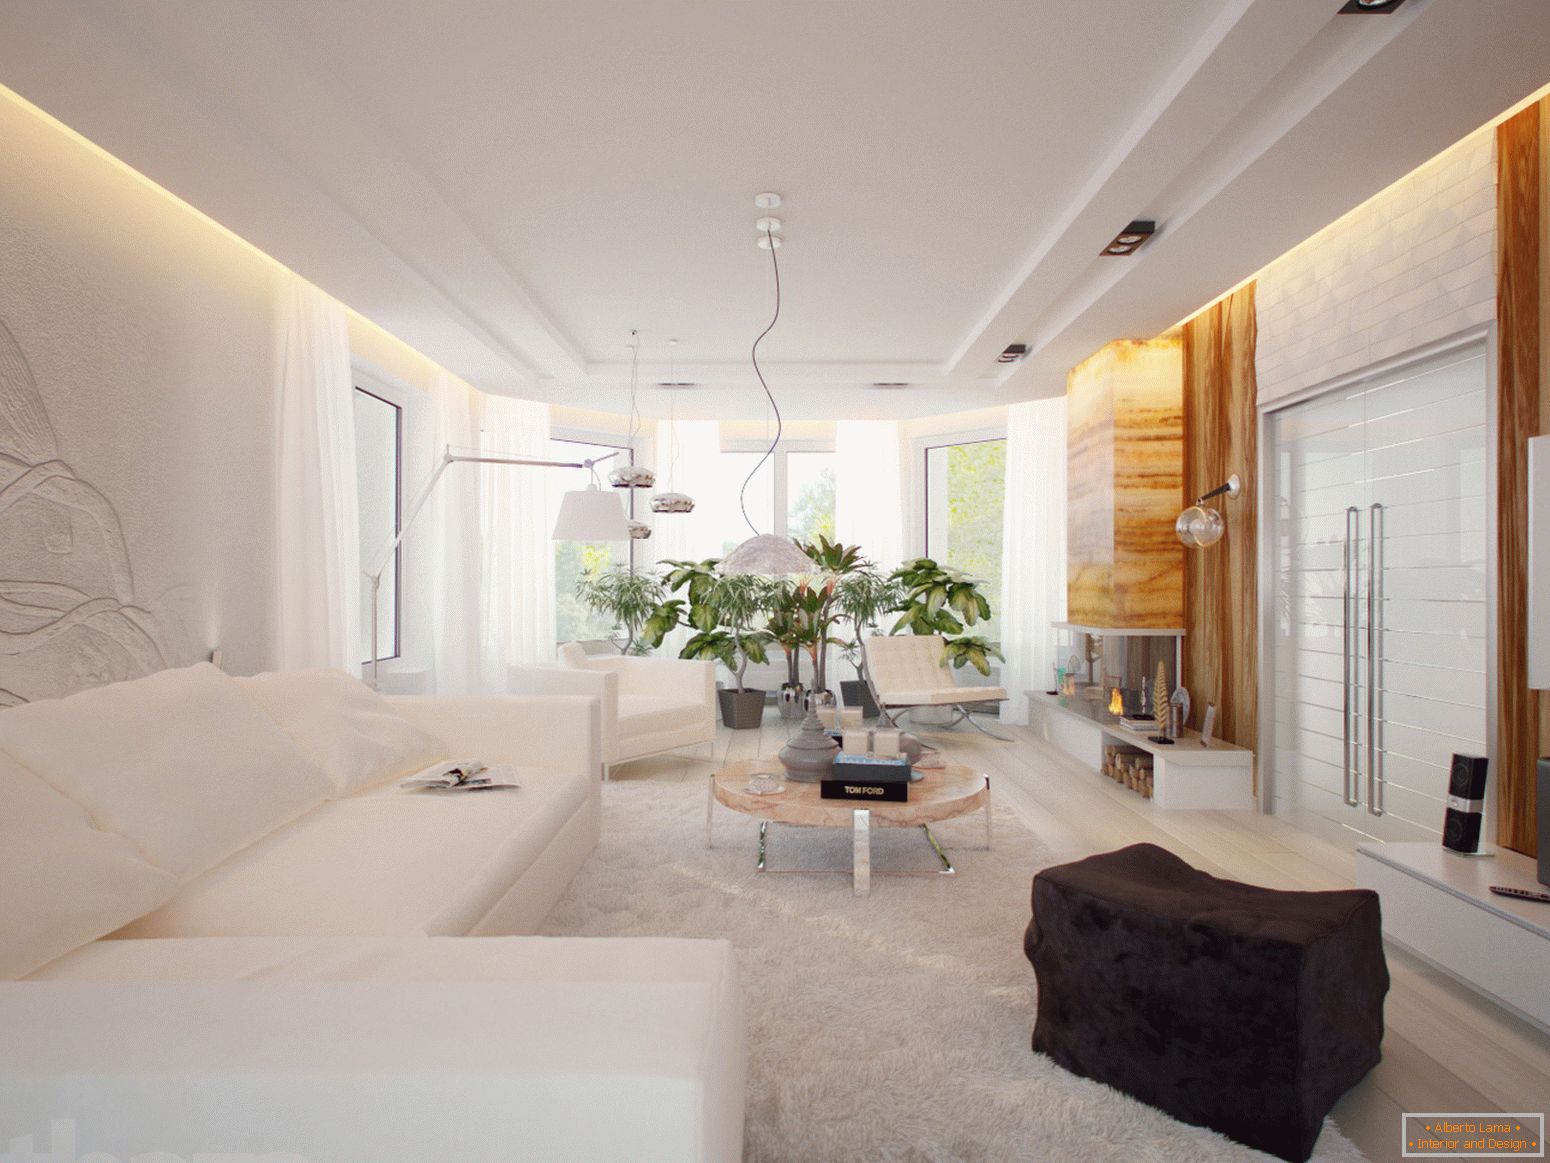 Przestronny i jasny pokój w minimalistycznym stylu jest doskonałym przykładem odpowiednio dobranych mebli.